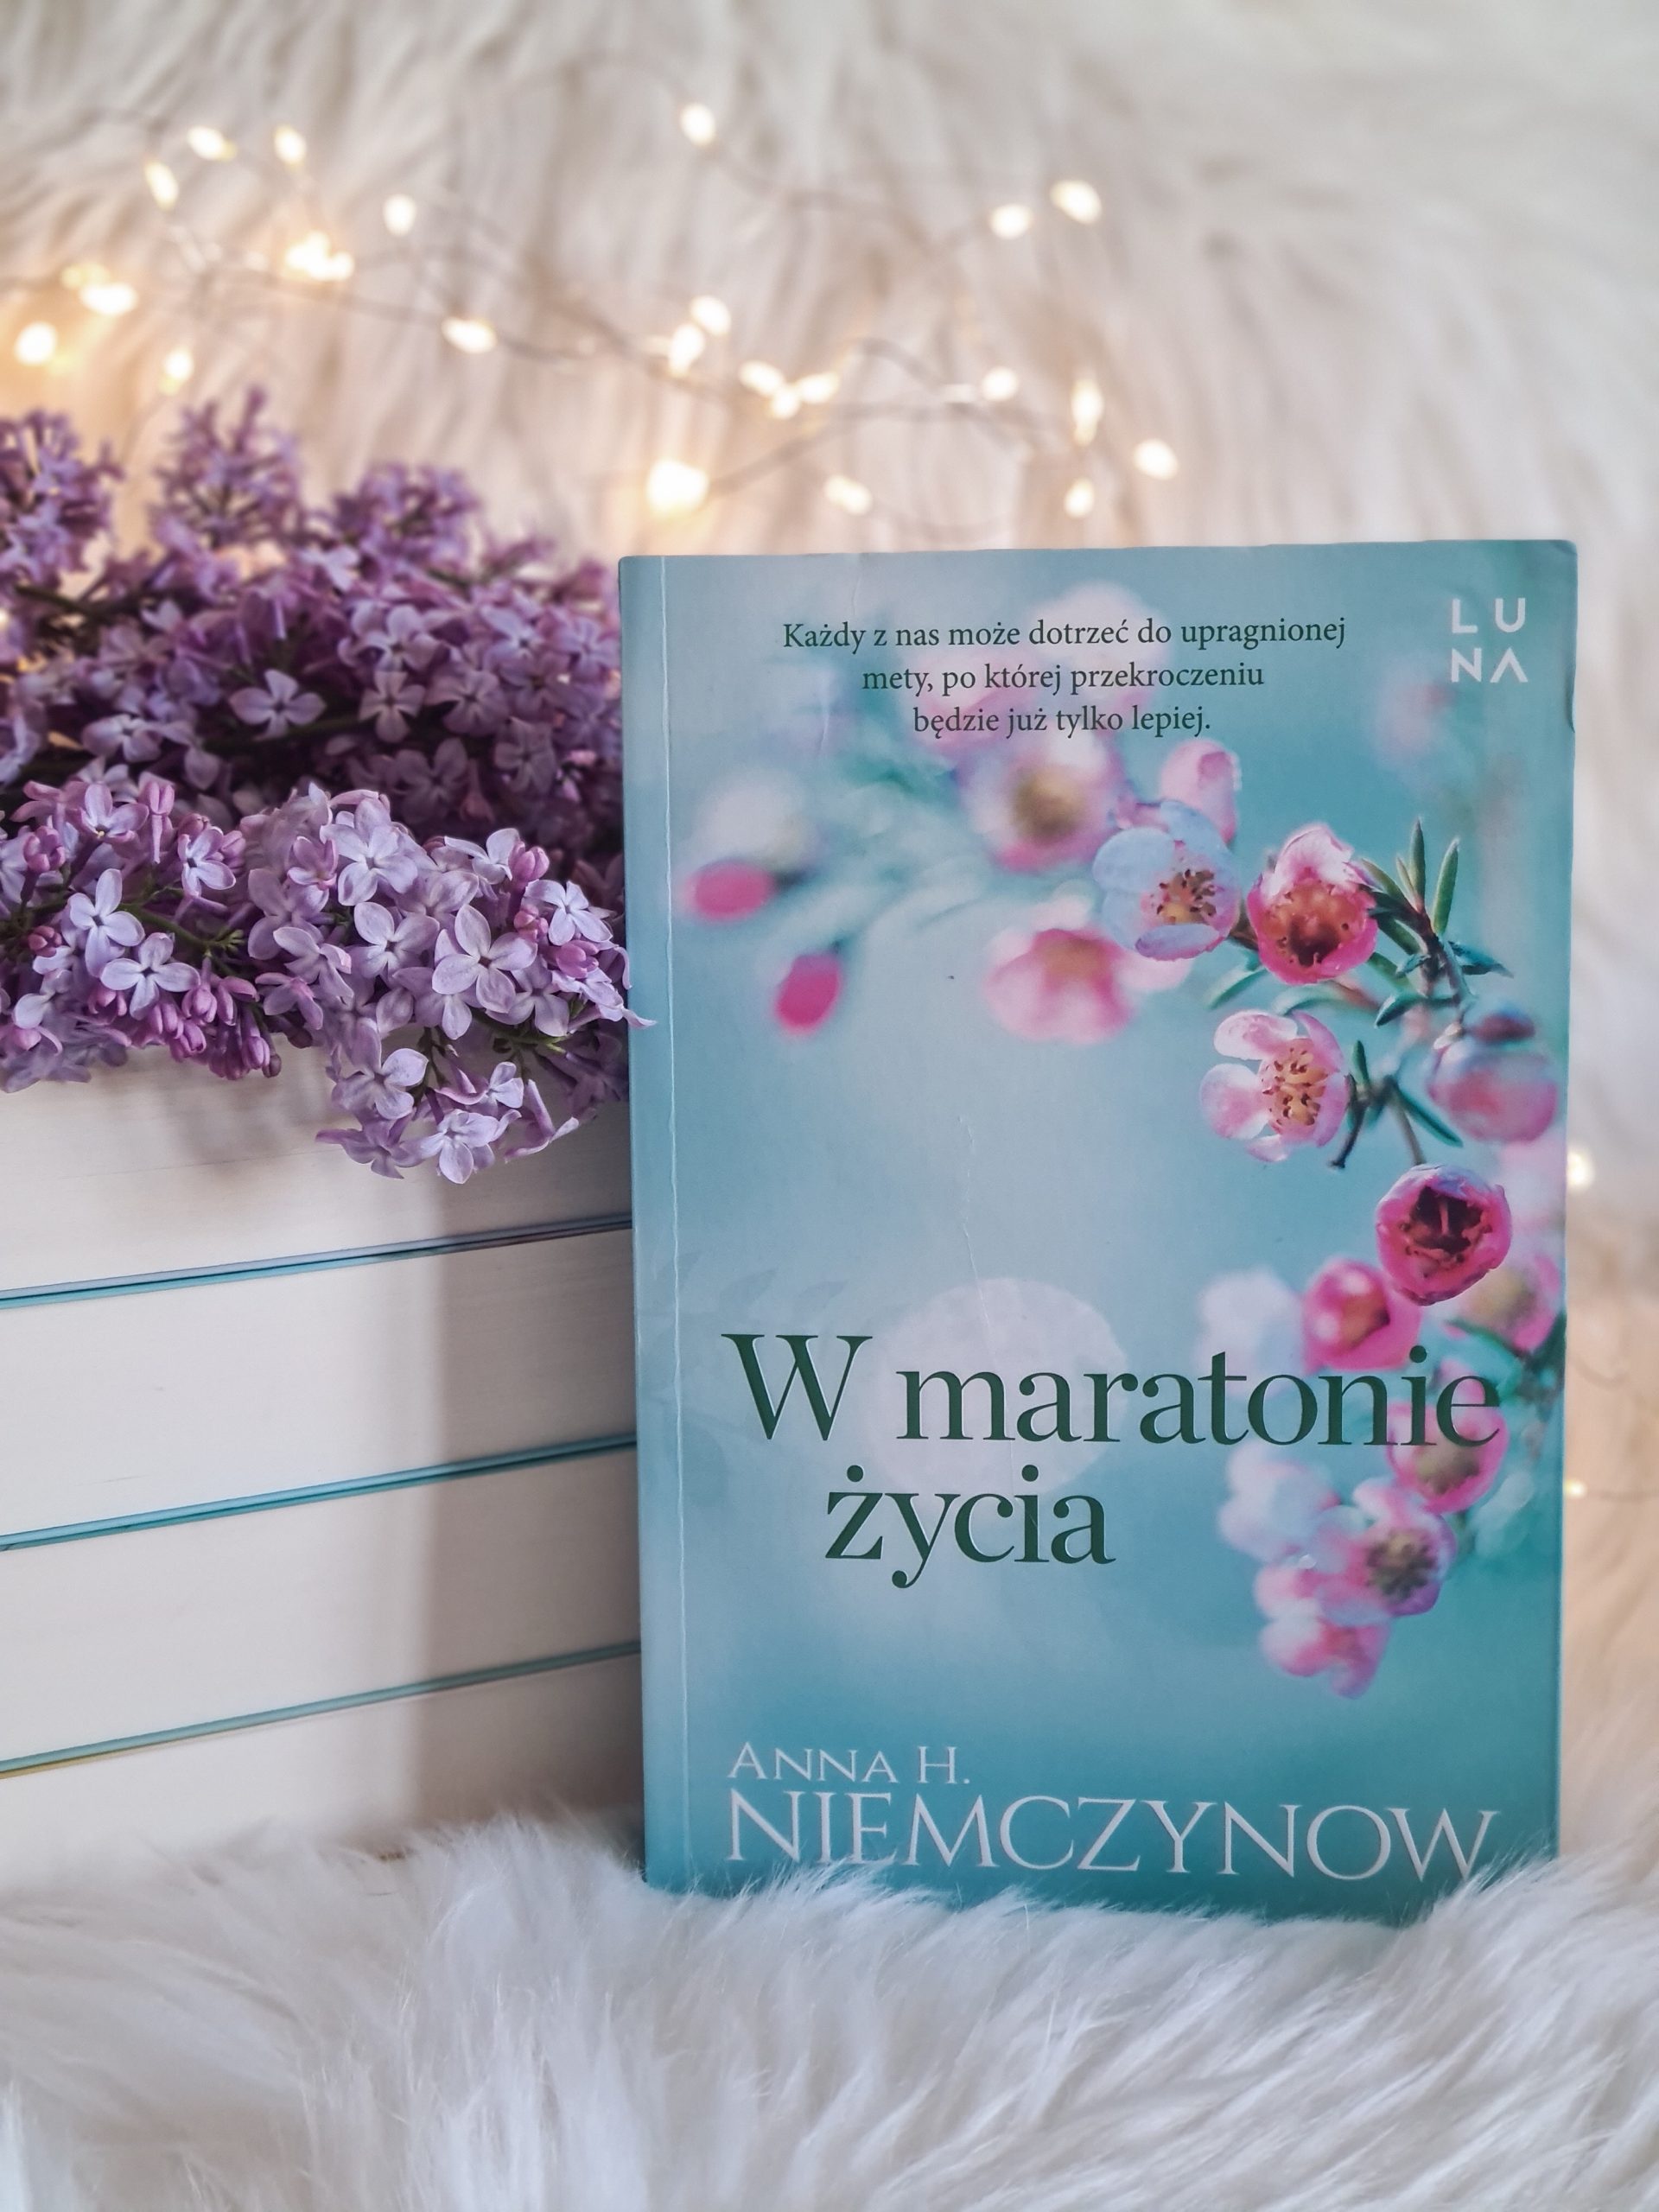 W maratonie życia, Anna H. Niemczynow, książka, debiut, powieść